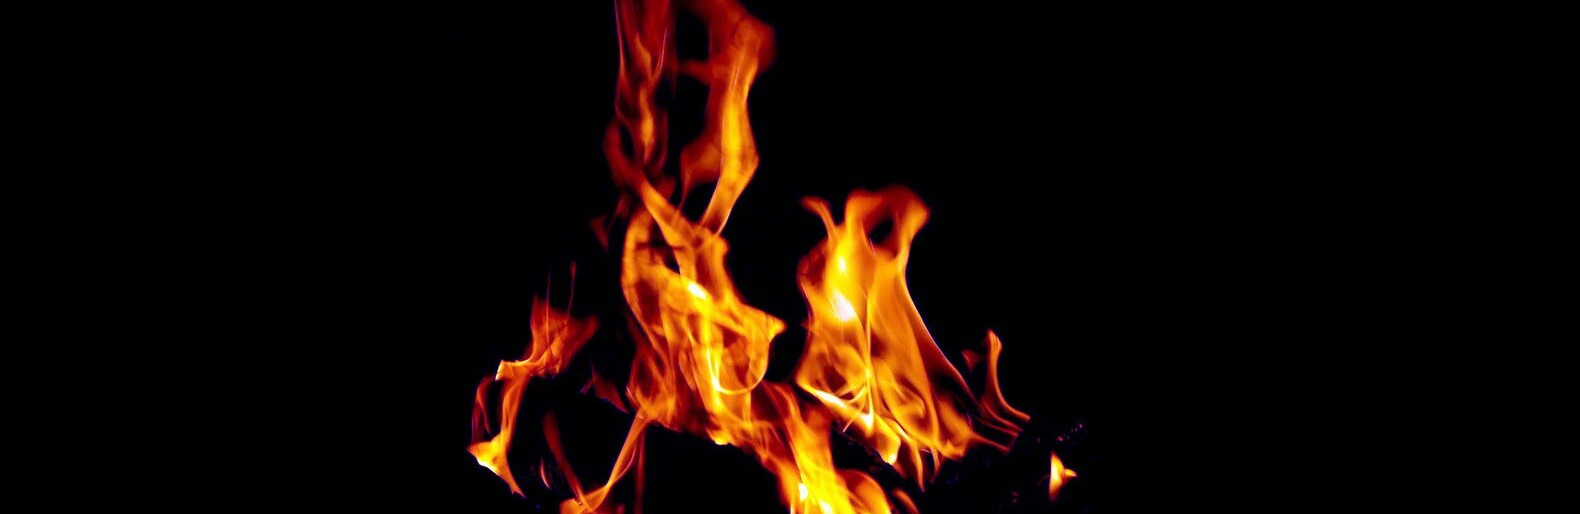 Молодая оскольчанка из ревности сожгла дом друга, бросив туда свой горящий халат